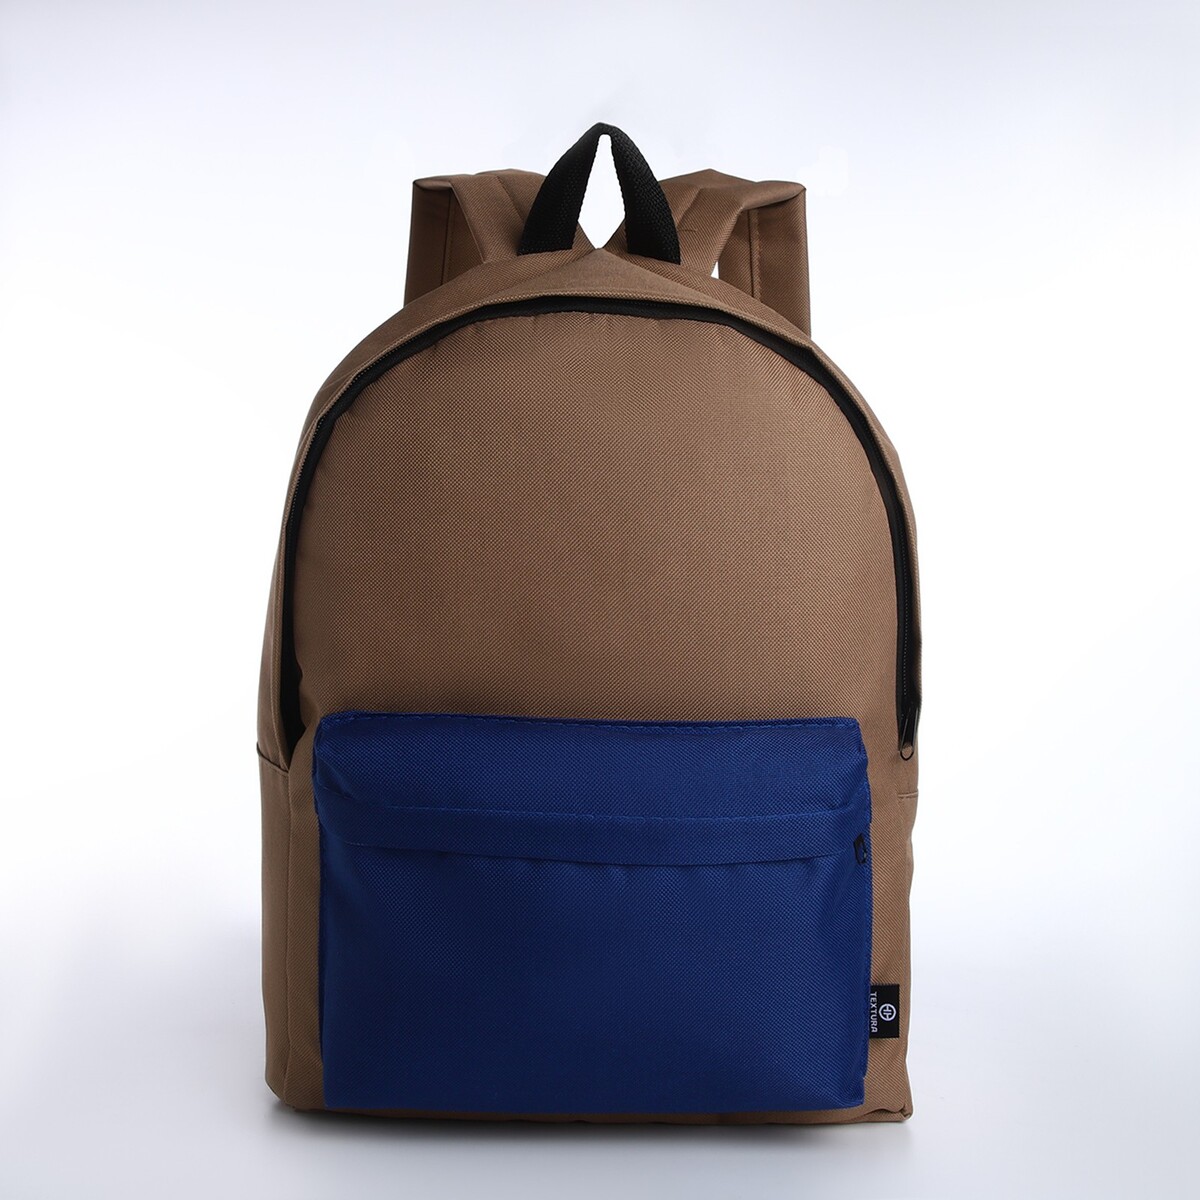 Спортивный рюкзак из текстиля на молнии textura, 20 литров, цвет бежевый/синий спортивный топ с чашками вкладышами